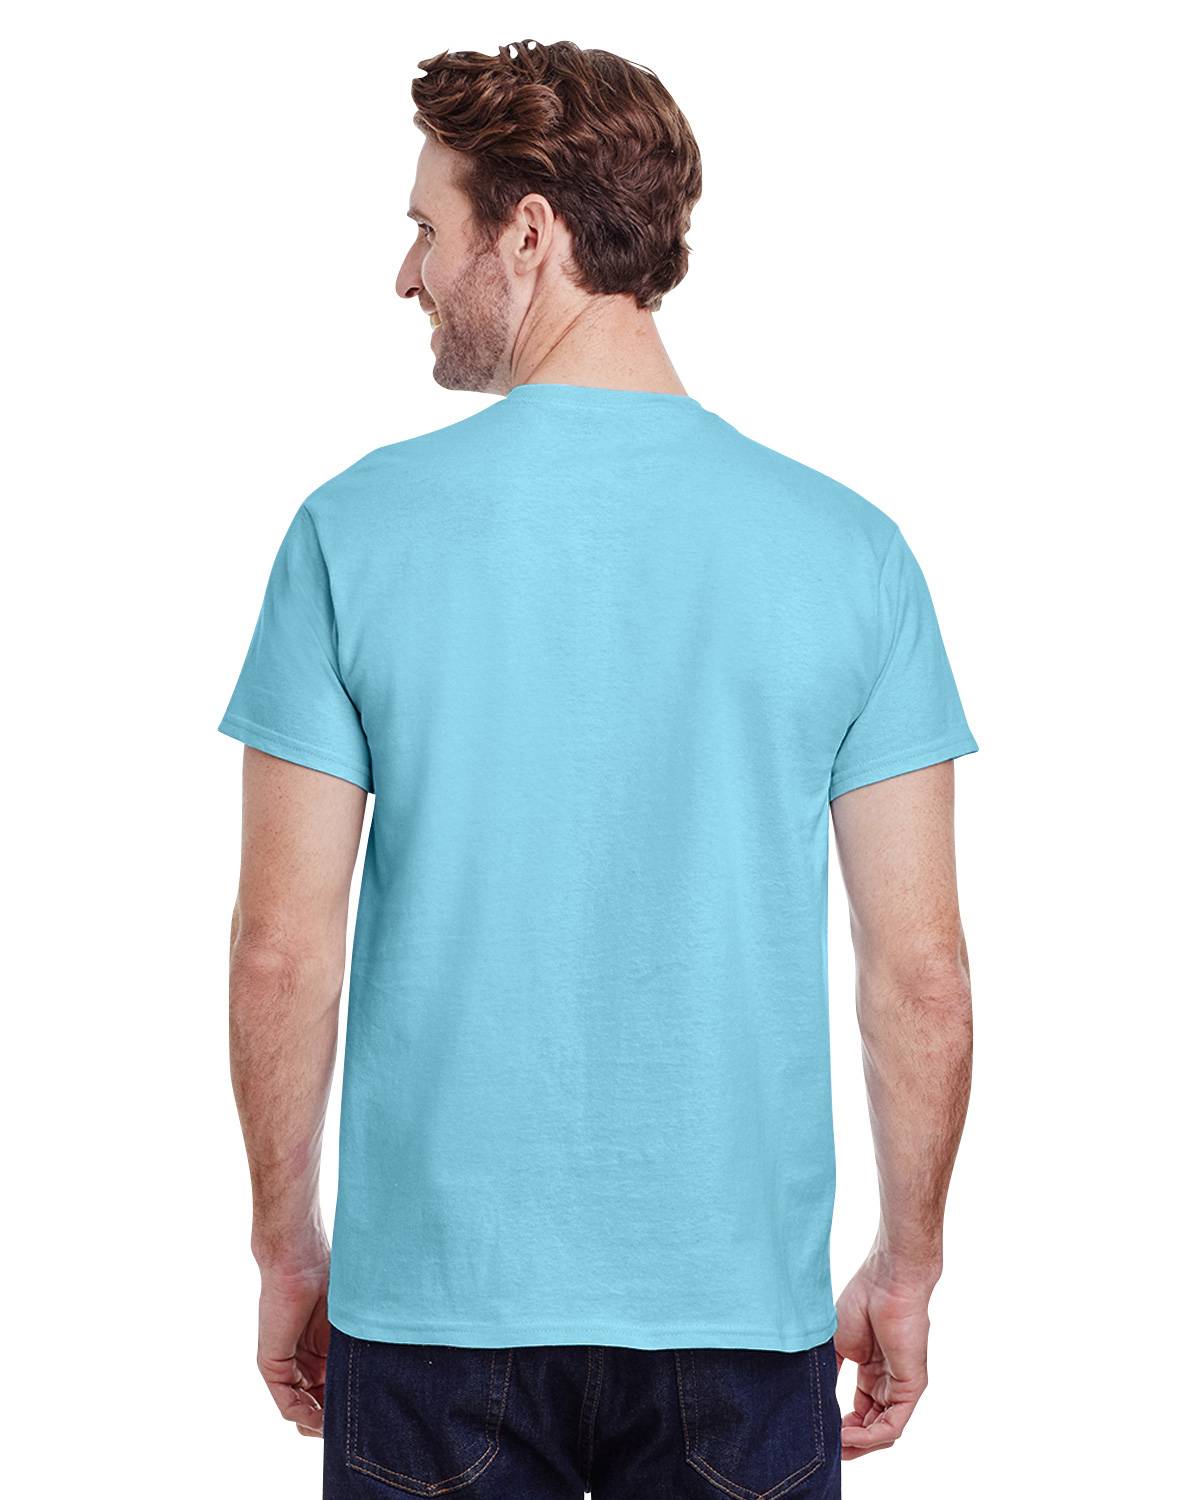 Gildan G500 Heavy Cotton T-Shirt - ApparelnBags.com